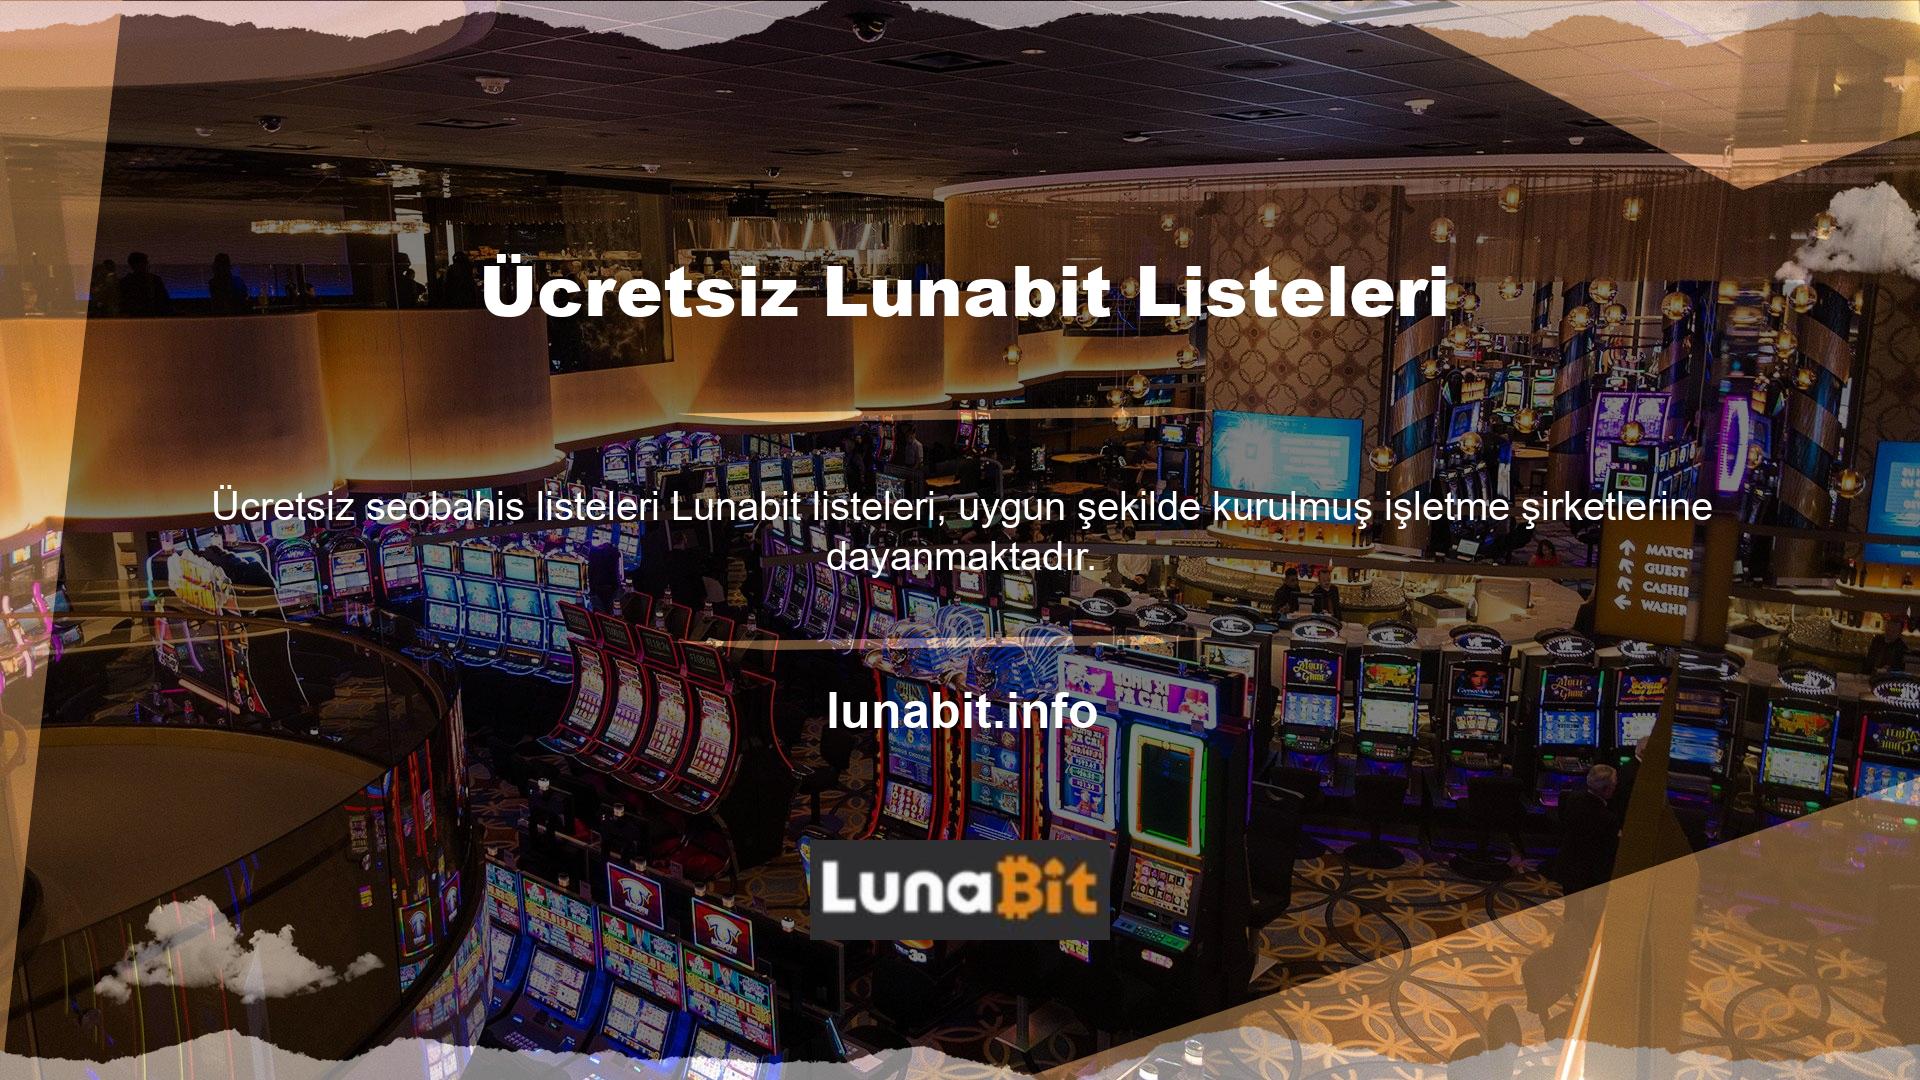 Lunabit kullanmak için Lunabit kayıt işlemini tamamlamalı ve para kazanma fırsatına sahip olmalısınız